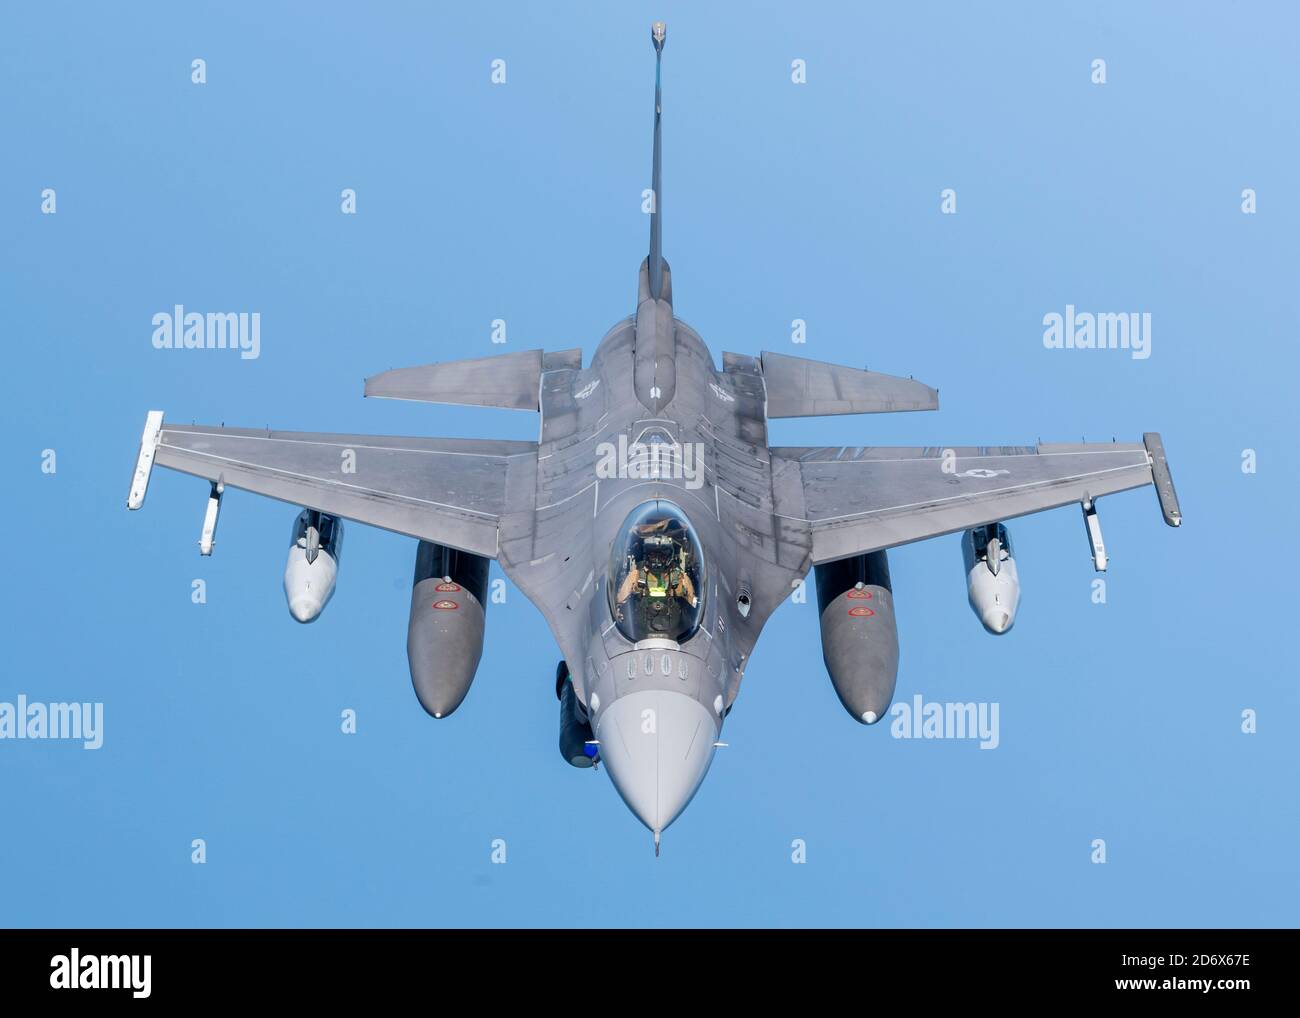 Eine F-16 Kampffalke der US-Luftwaffe fliegt über den Verantwortungsbereich des US Central Command am 14. Oktober 2020. Die F-16 Fighting Falcon ist ein kompaktes, multirole Kampfflugzeug, das sich sowohl im Luft-Luft-Kampf als auch im Luft-zu-Boden-Angriff bewährt hat. (USA Luftwaffe Foto von Senior Airman Duncan C. Bevan) Stockfoto